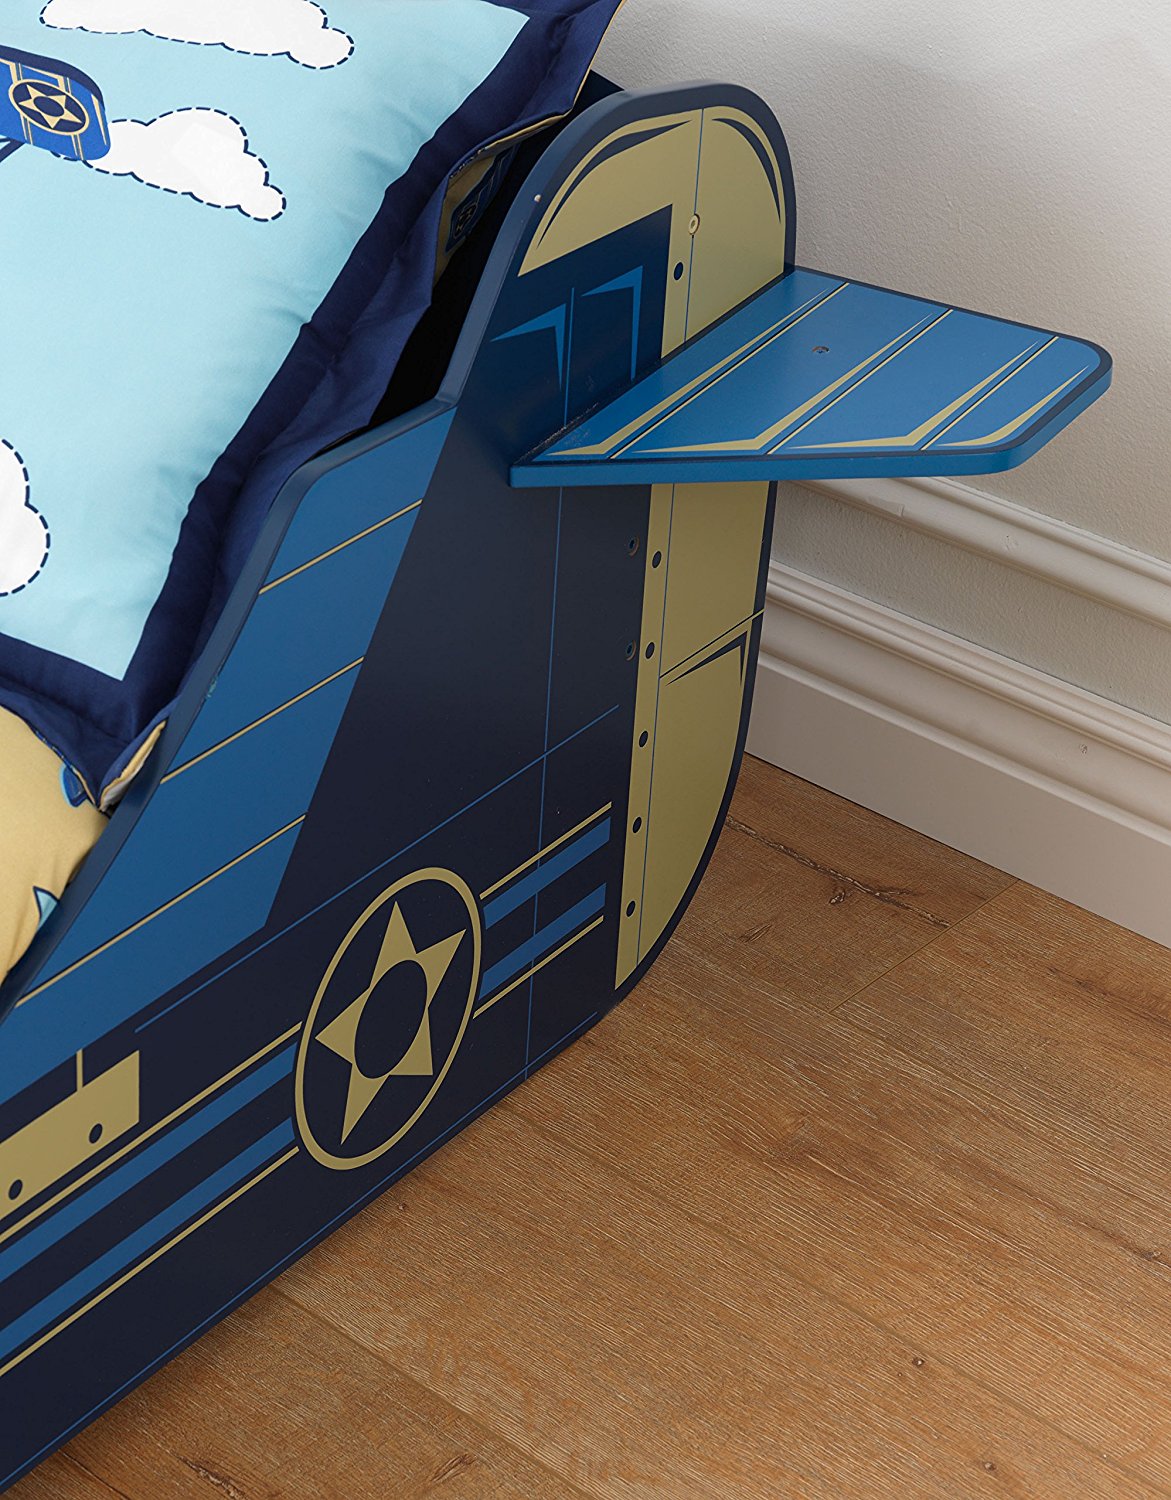 Детская кровать – Самолет, с ящиком для белья  